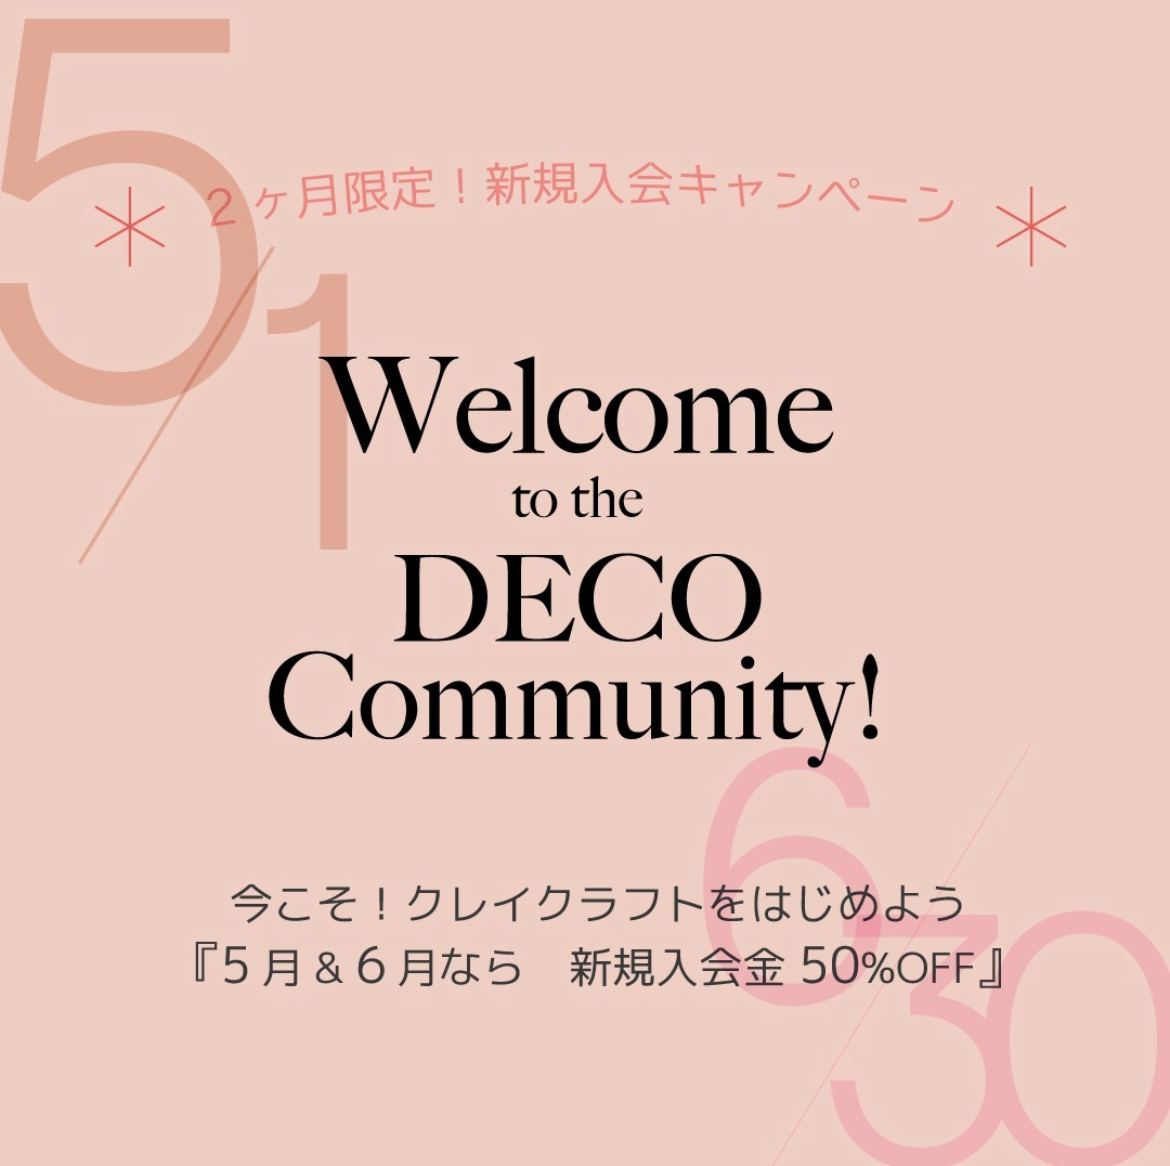 DECO Community